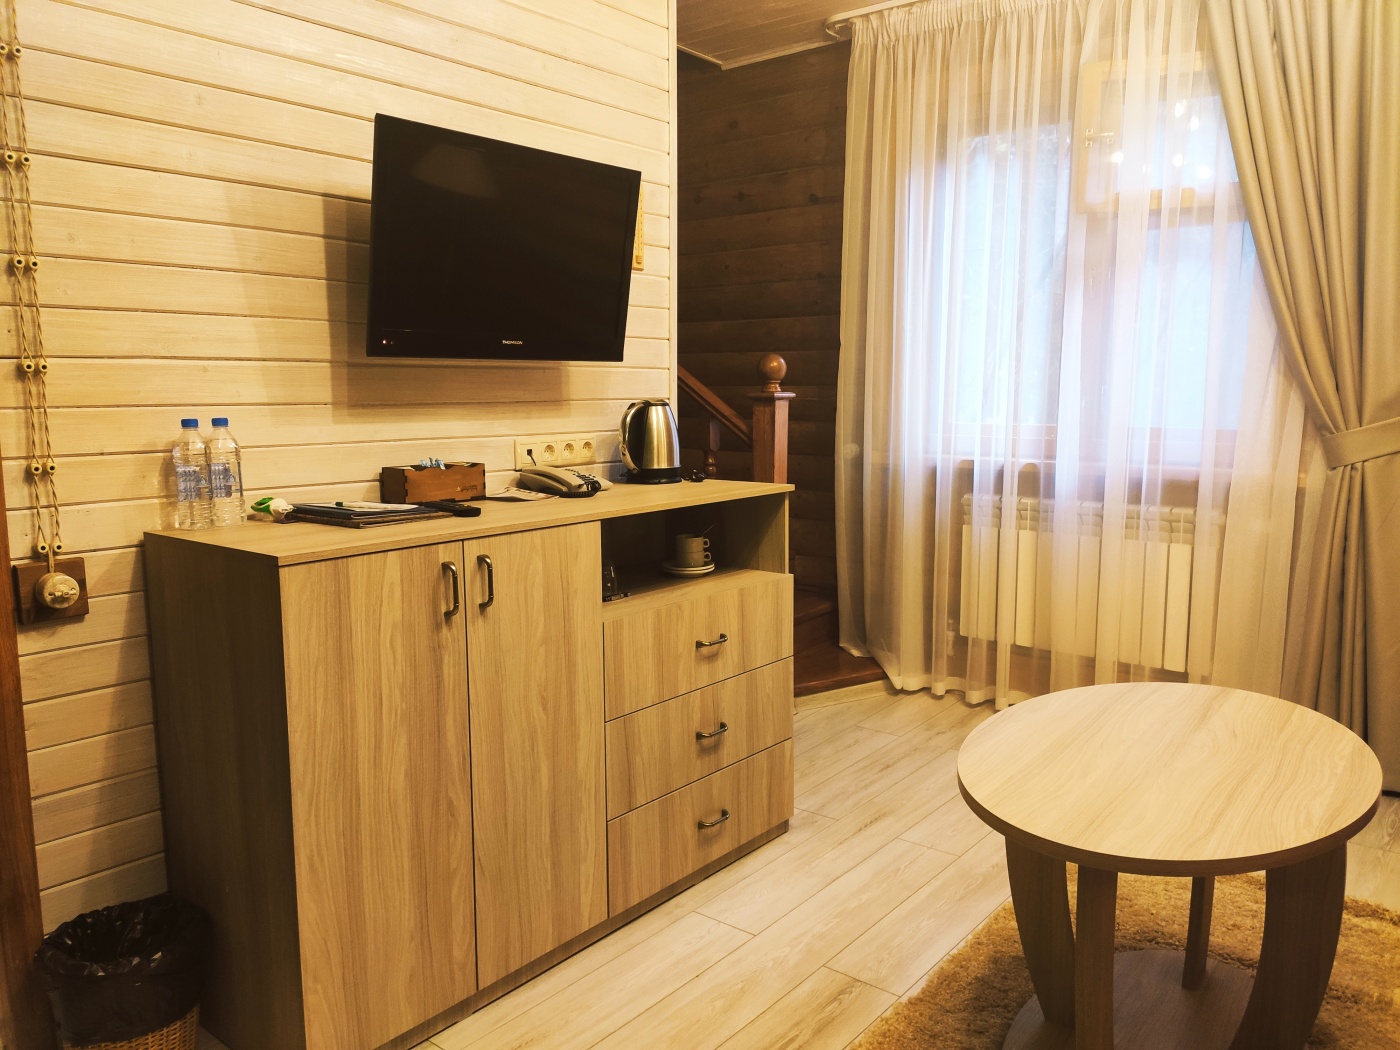  Дачный отель «Истра Holiday» Московская область Таунхаус с одной спальной комнатой, фото 2